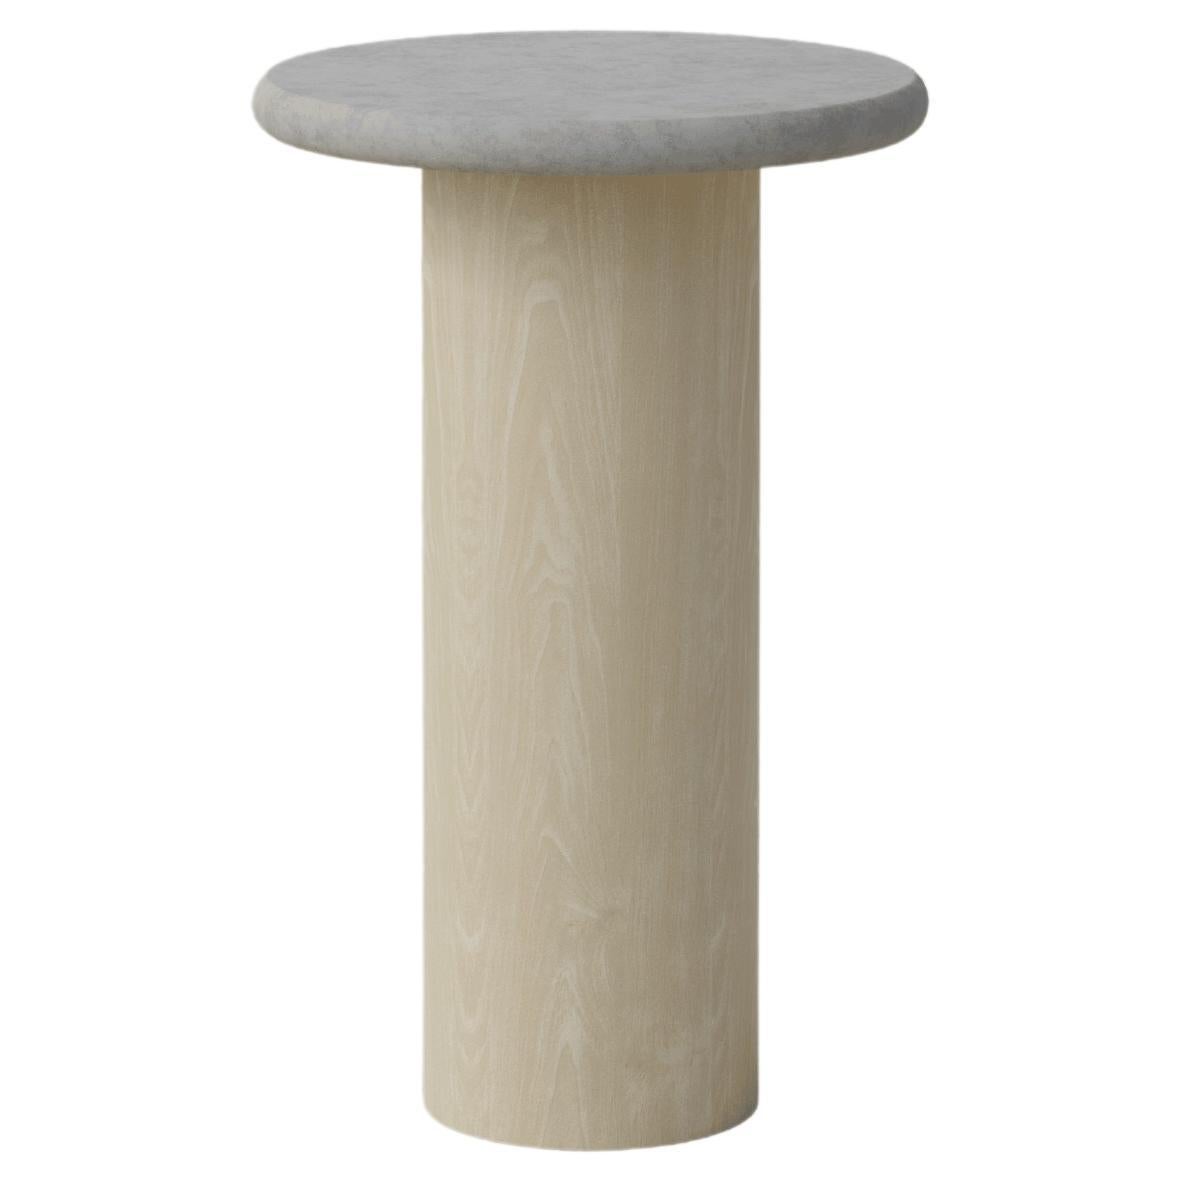 Table basse en forme de goutte d'eau, 300 cm, Microcrete / Frêne